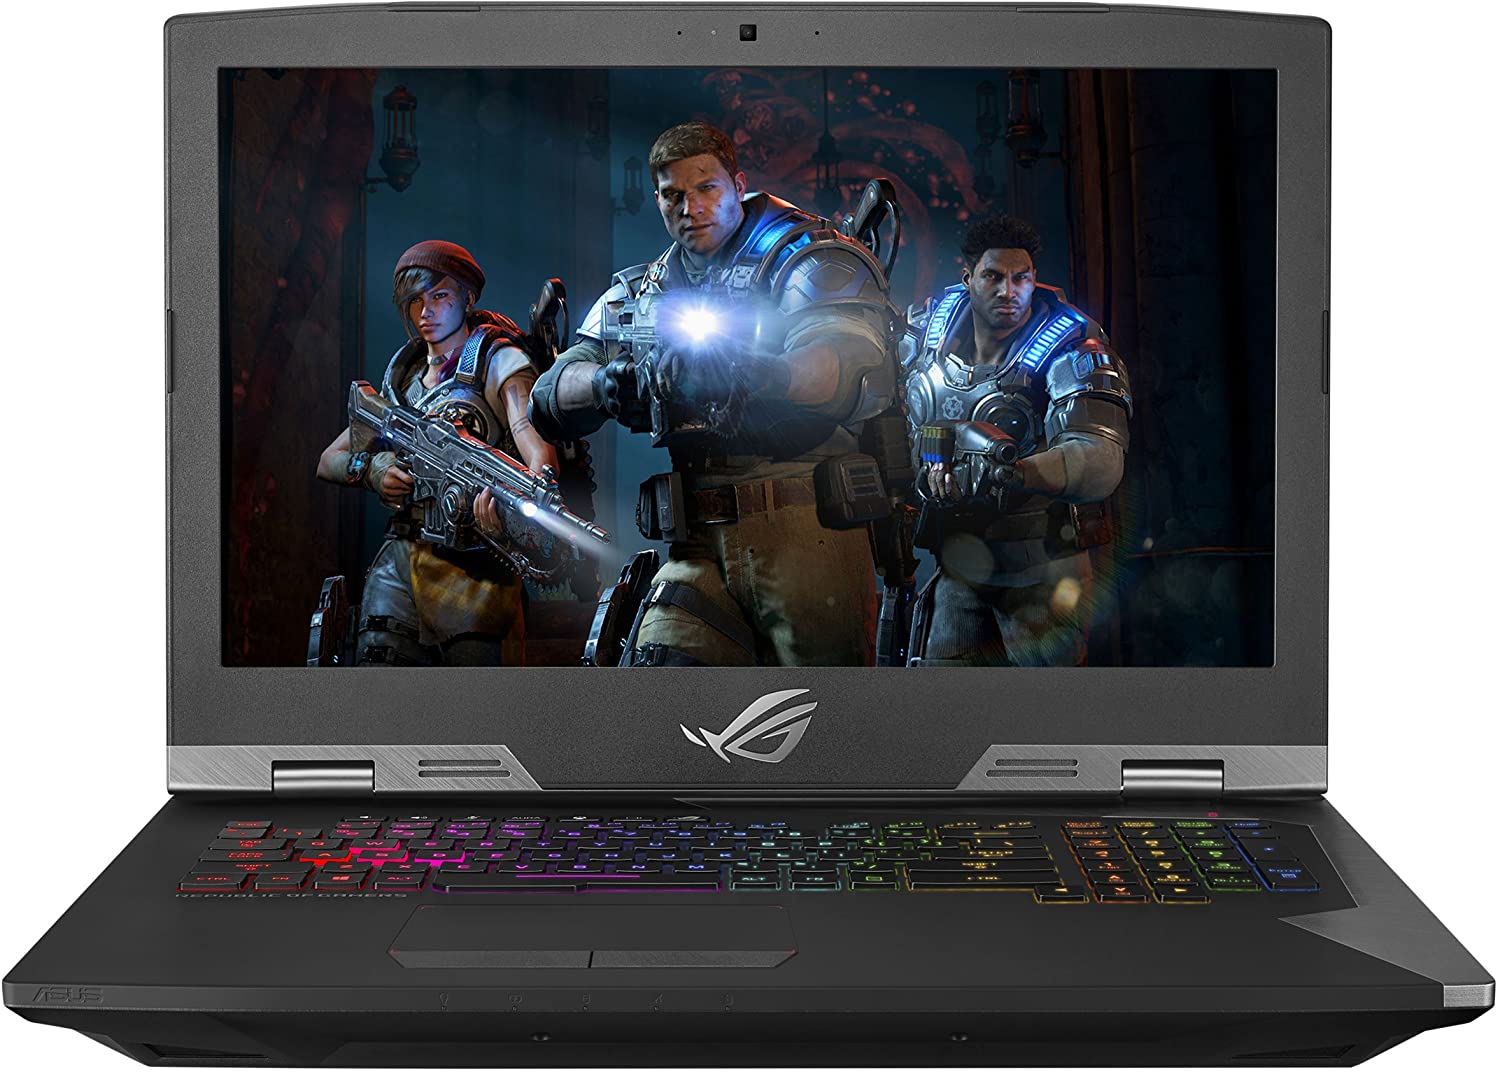 ASUS ROG G703 Desktop Replacement Gaming Laptop